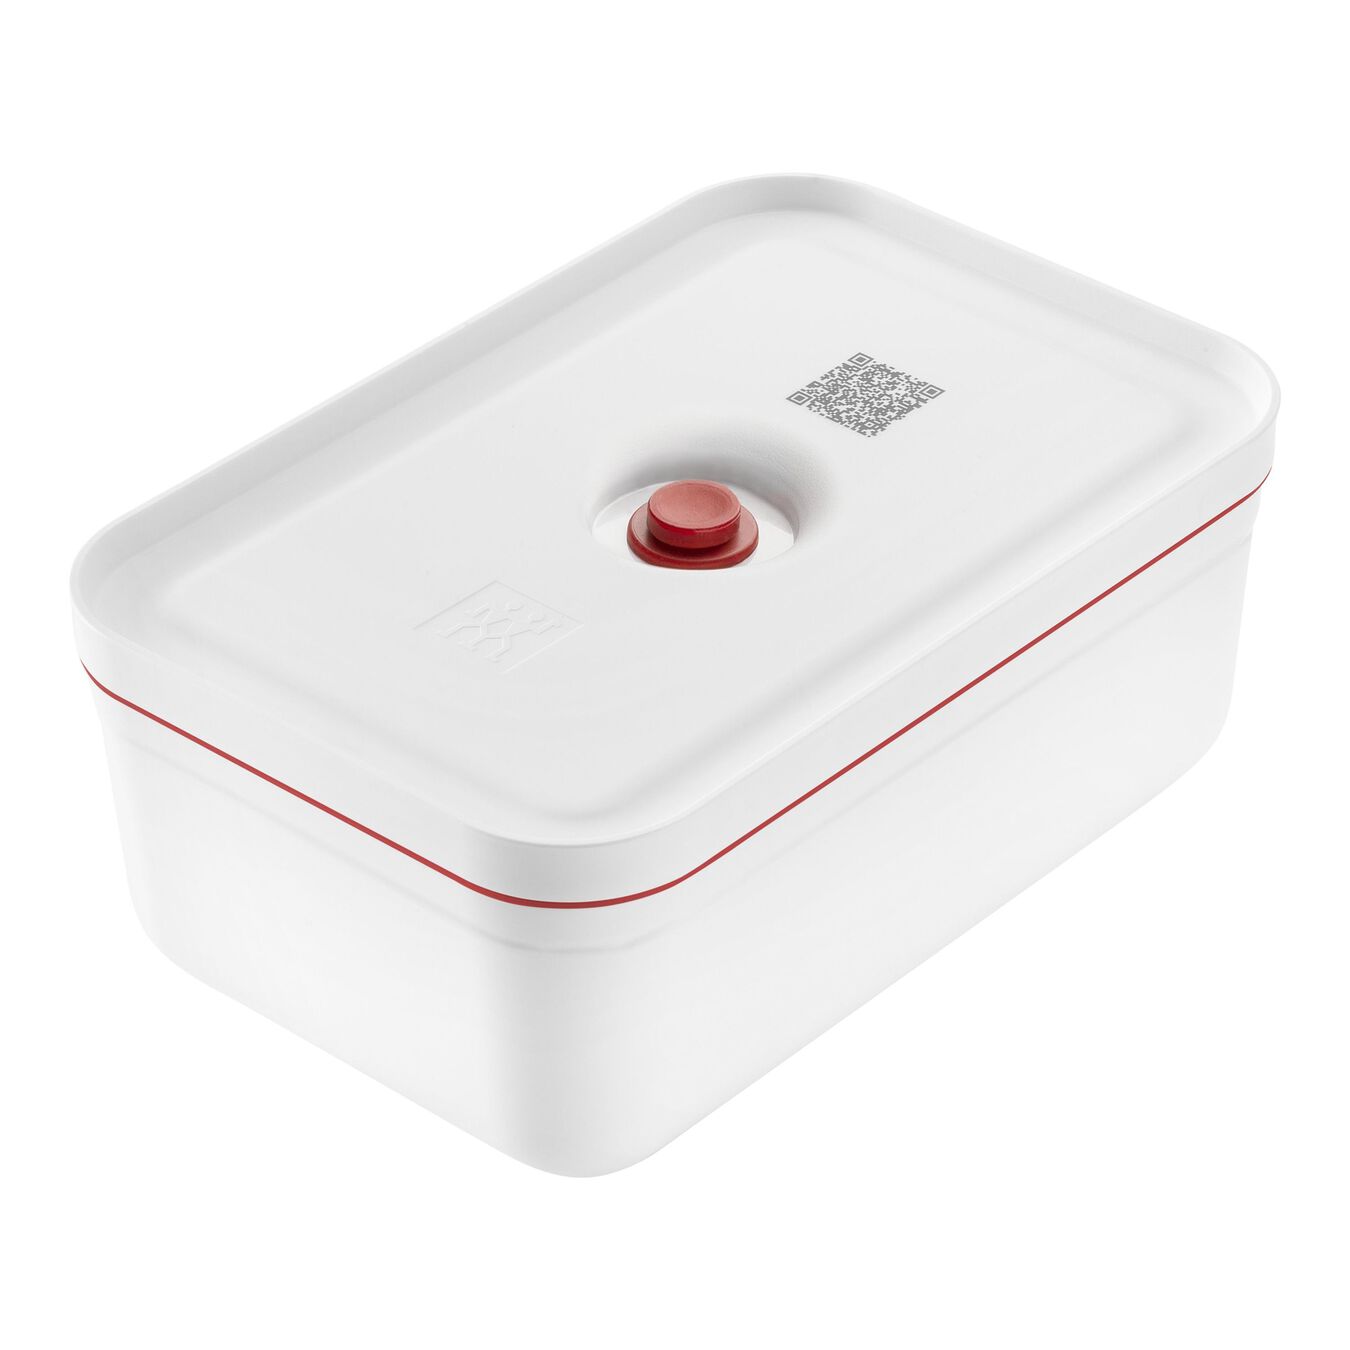 Lunch box sous-vide L, Plastique, Blanc-Rouge,,large 1